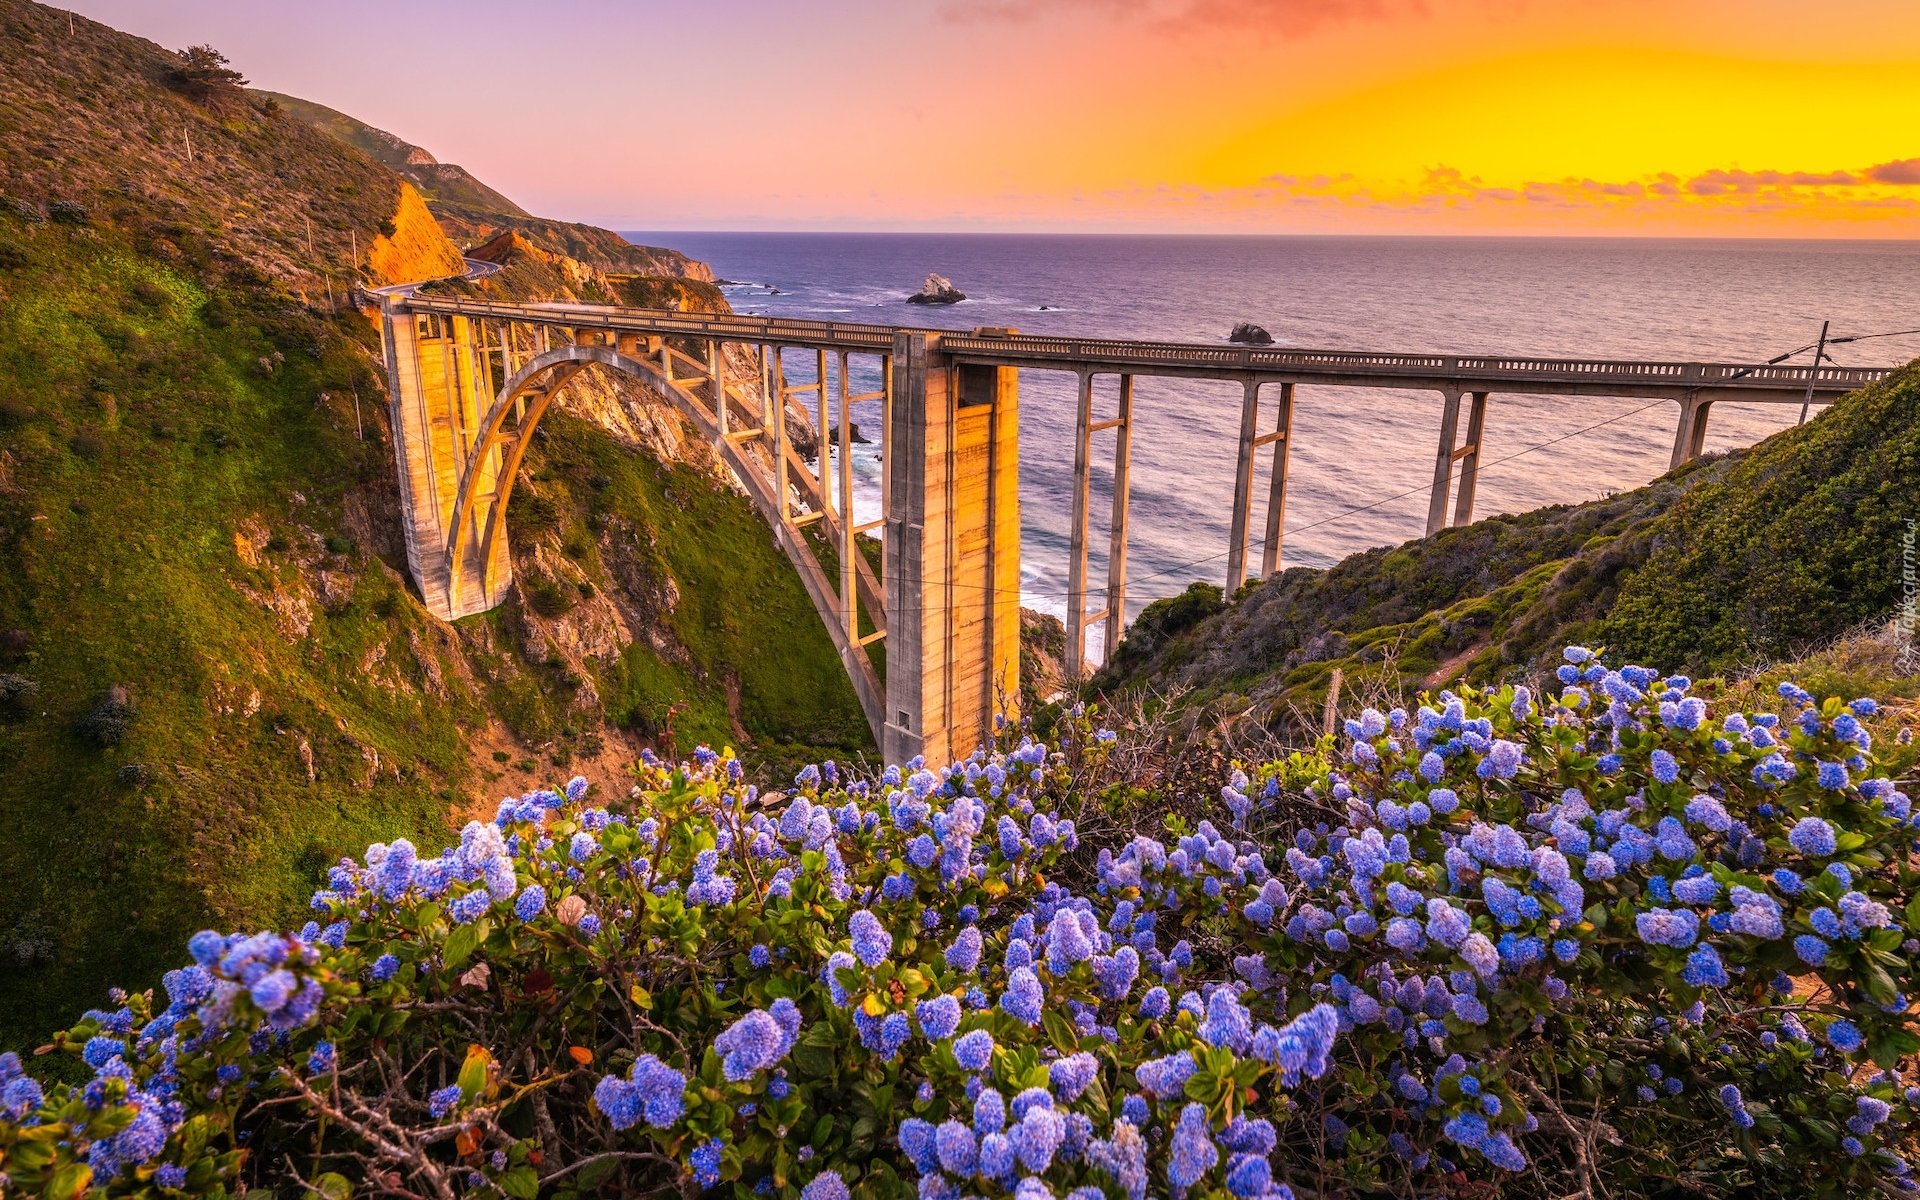 Stany Zjednoczone, Kalifornia, Morze, Most Bixby Creek Bridge, Wybrzeże, Region Big Sur, Zachód słońca, Kwiaty, Łąka